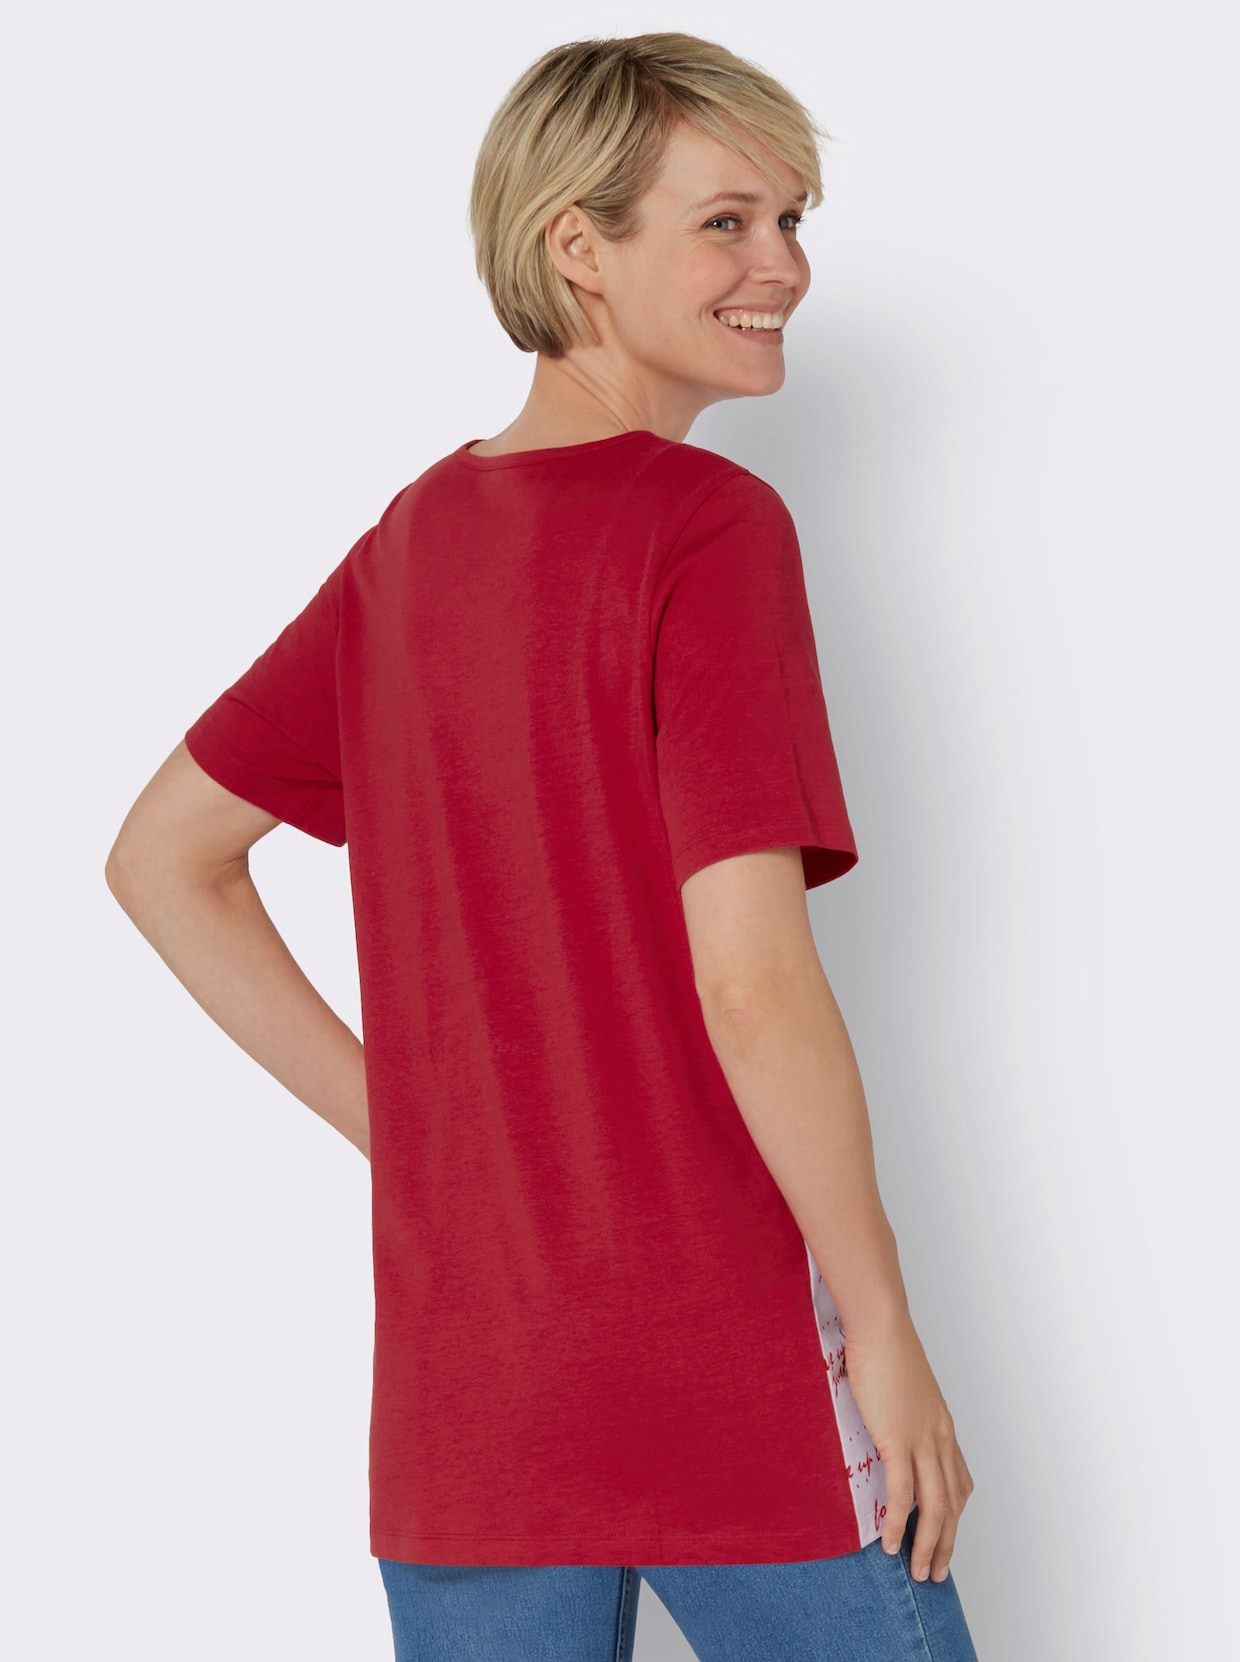 Longshirt - rot-weiß